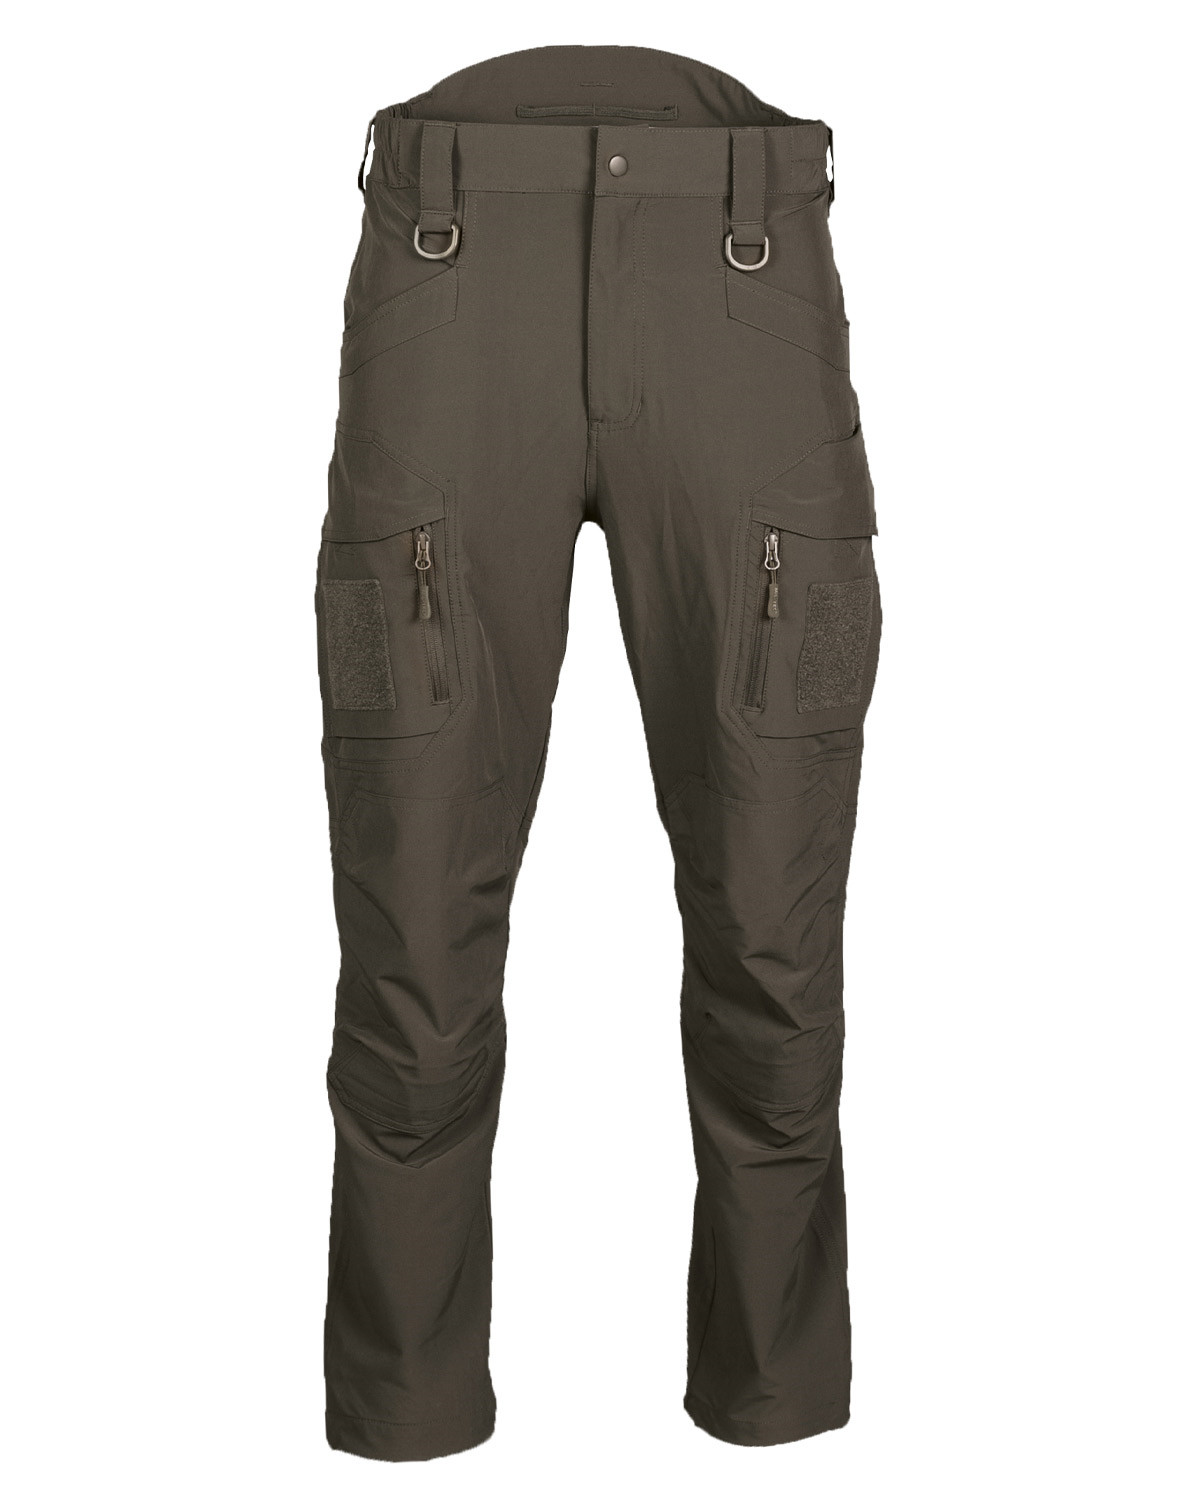 Mil-Tec Tactical Pants (Oliven, M)